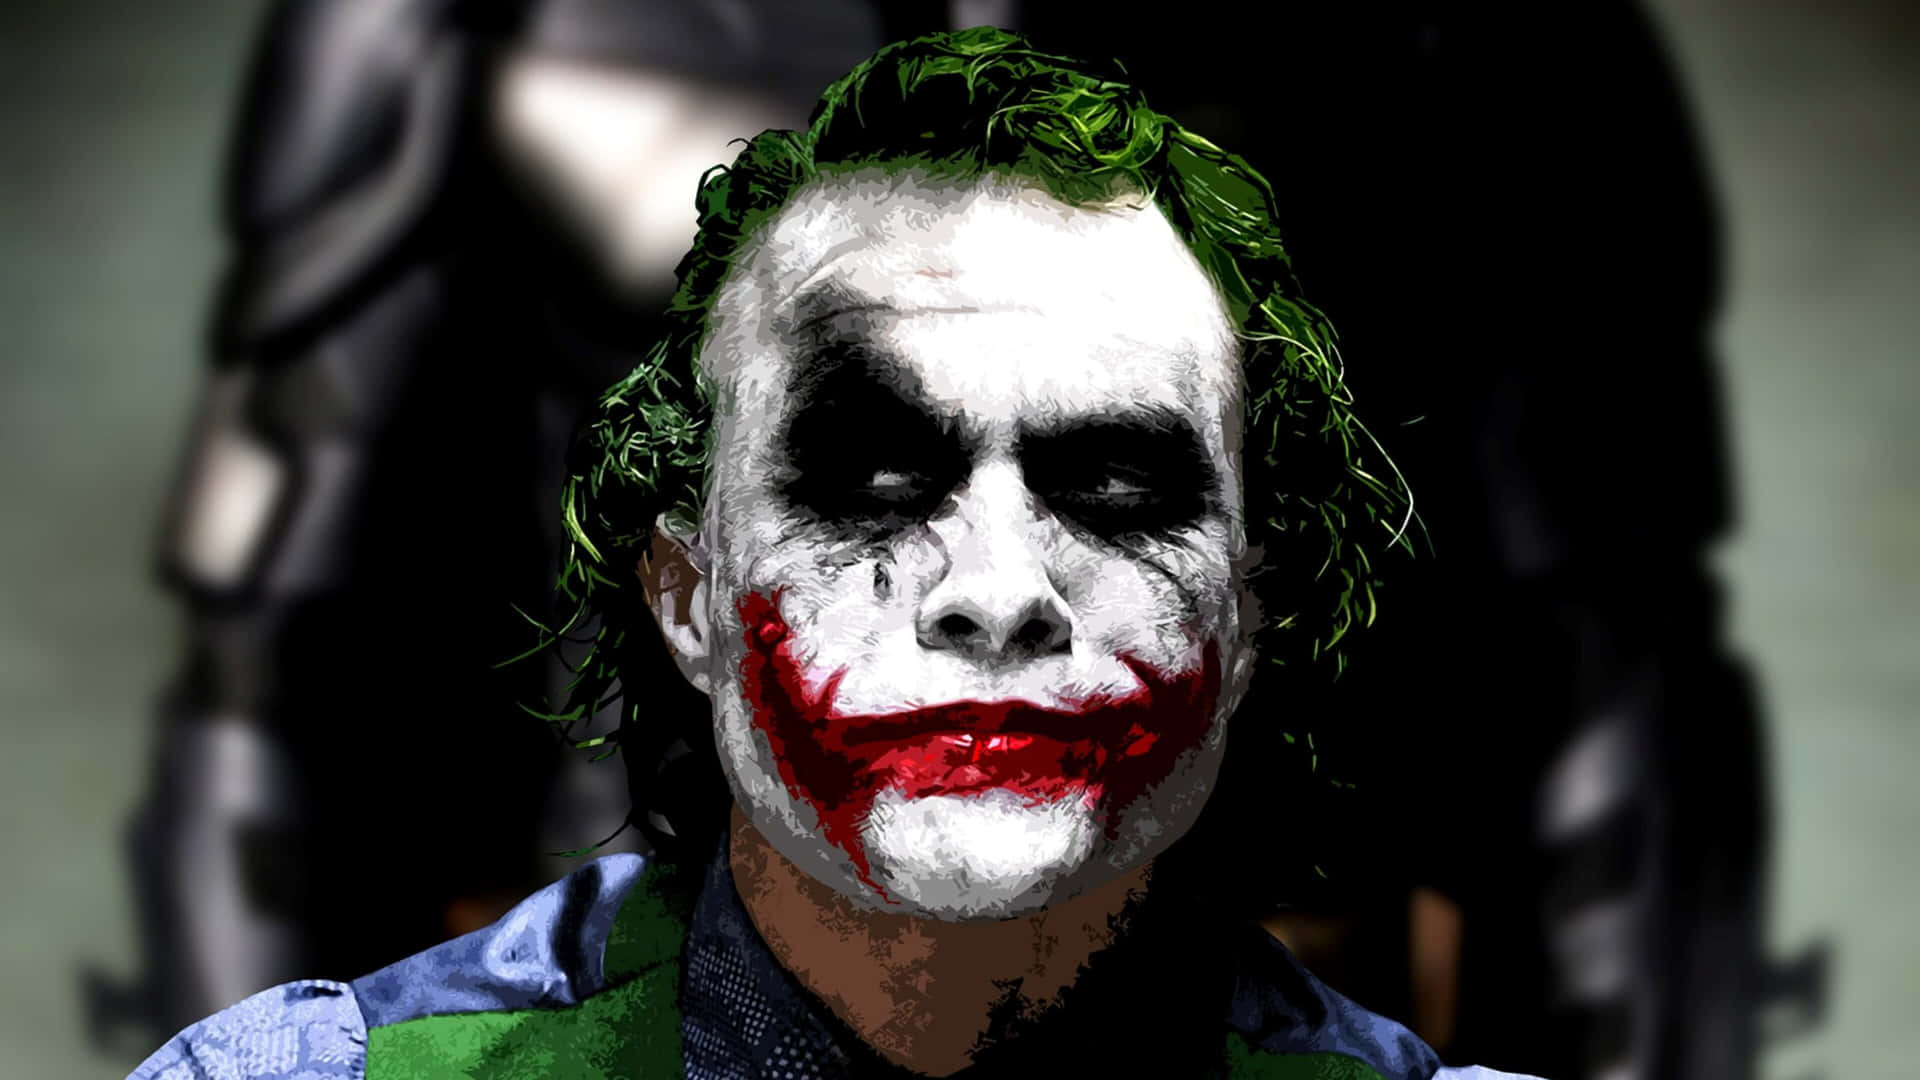 Download Batman: The Dark Knight Joker in 4k Ultra HD Wallpaper ...